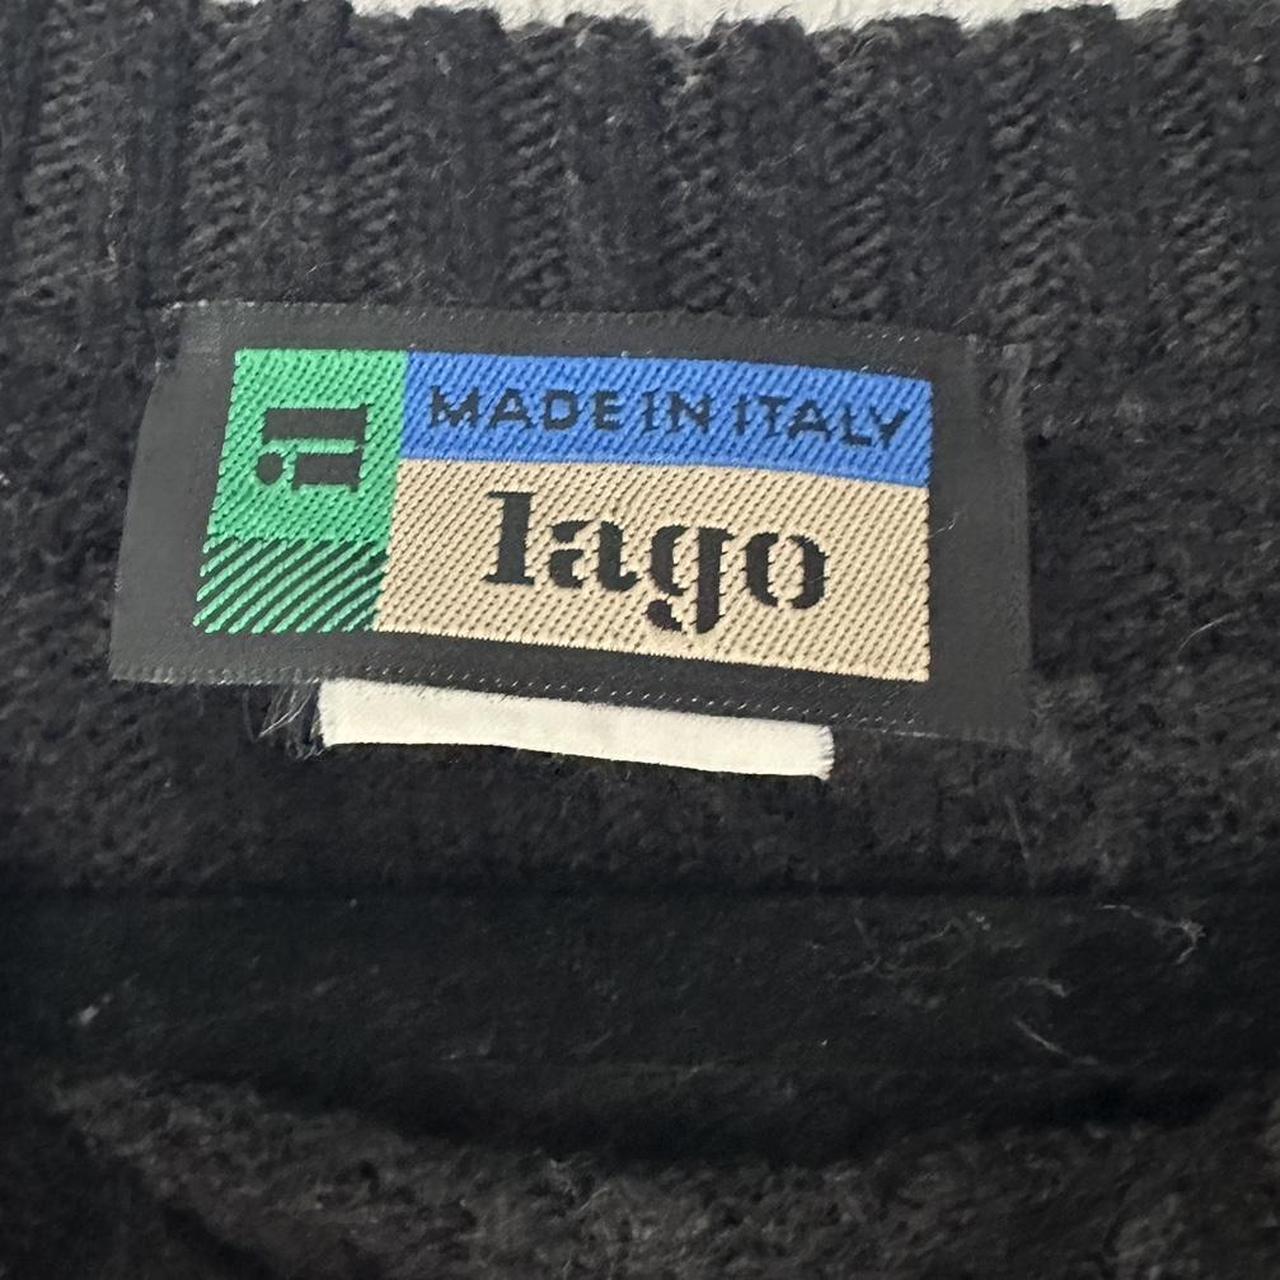 Vintage Sweater 🟥🟧🟥 - size M but a little baggy -... - Depop